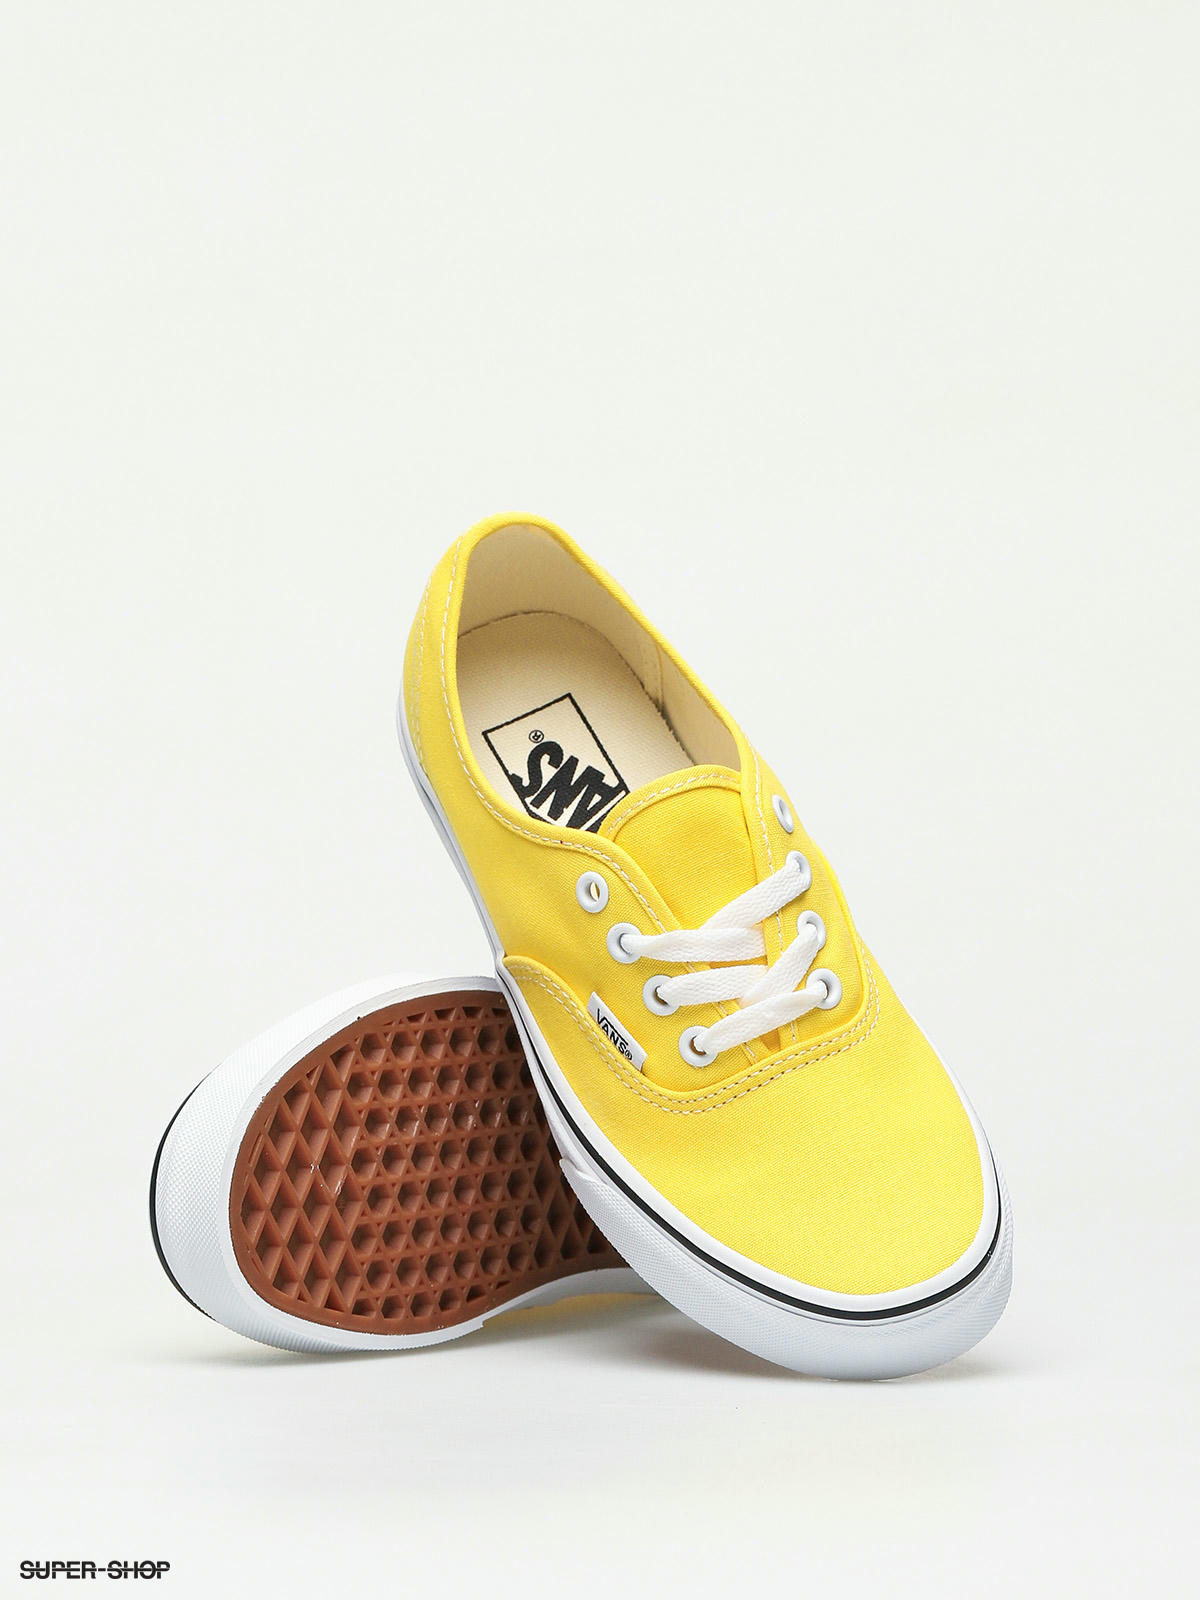 Vans Authentic Shoes (vibrant yellow 